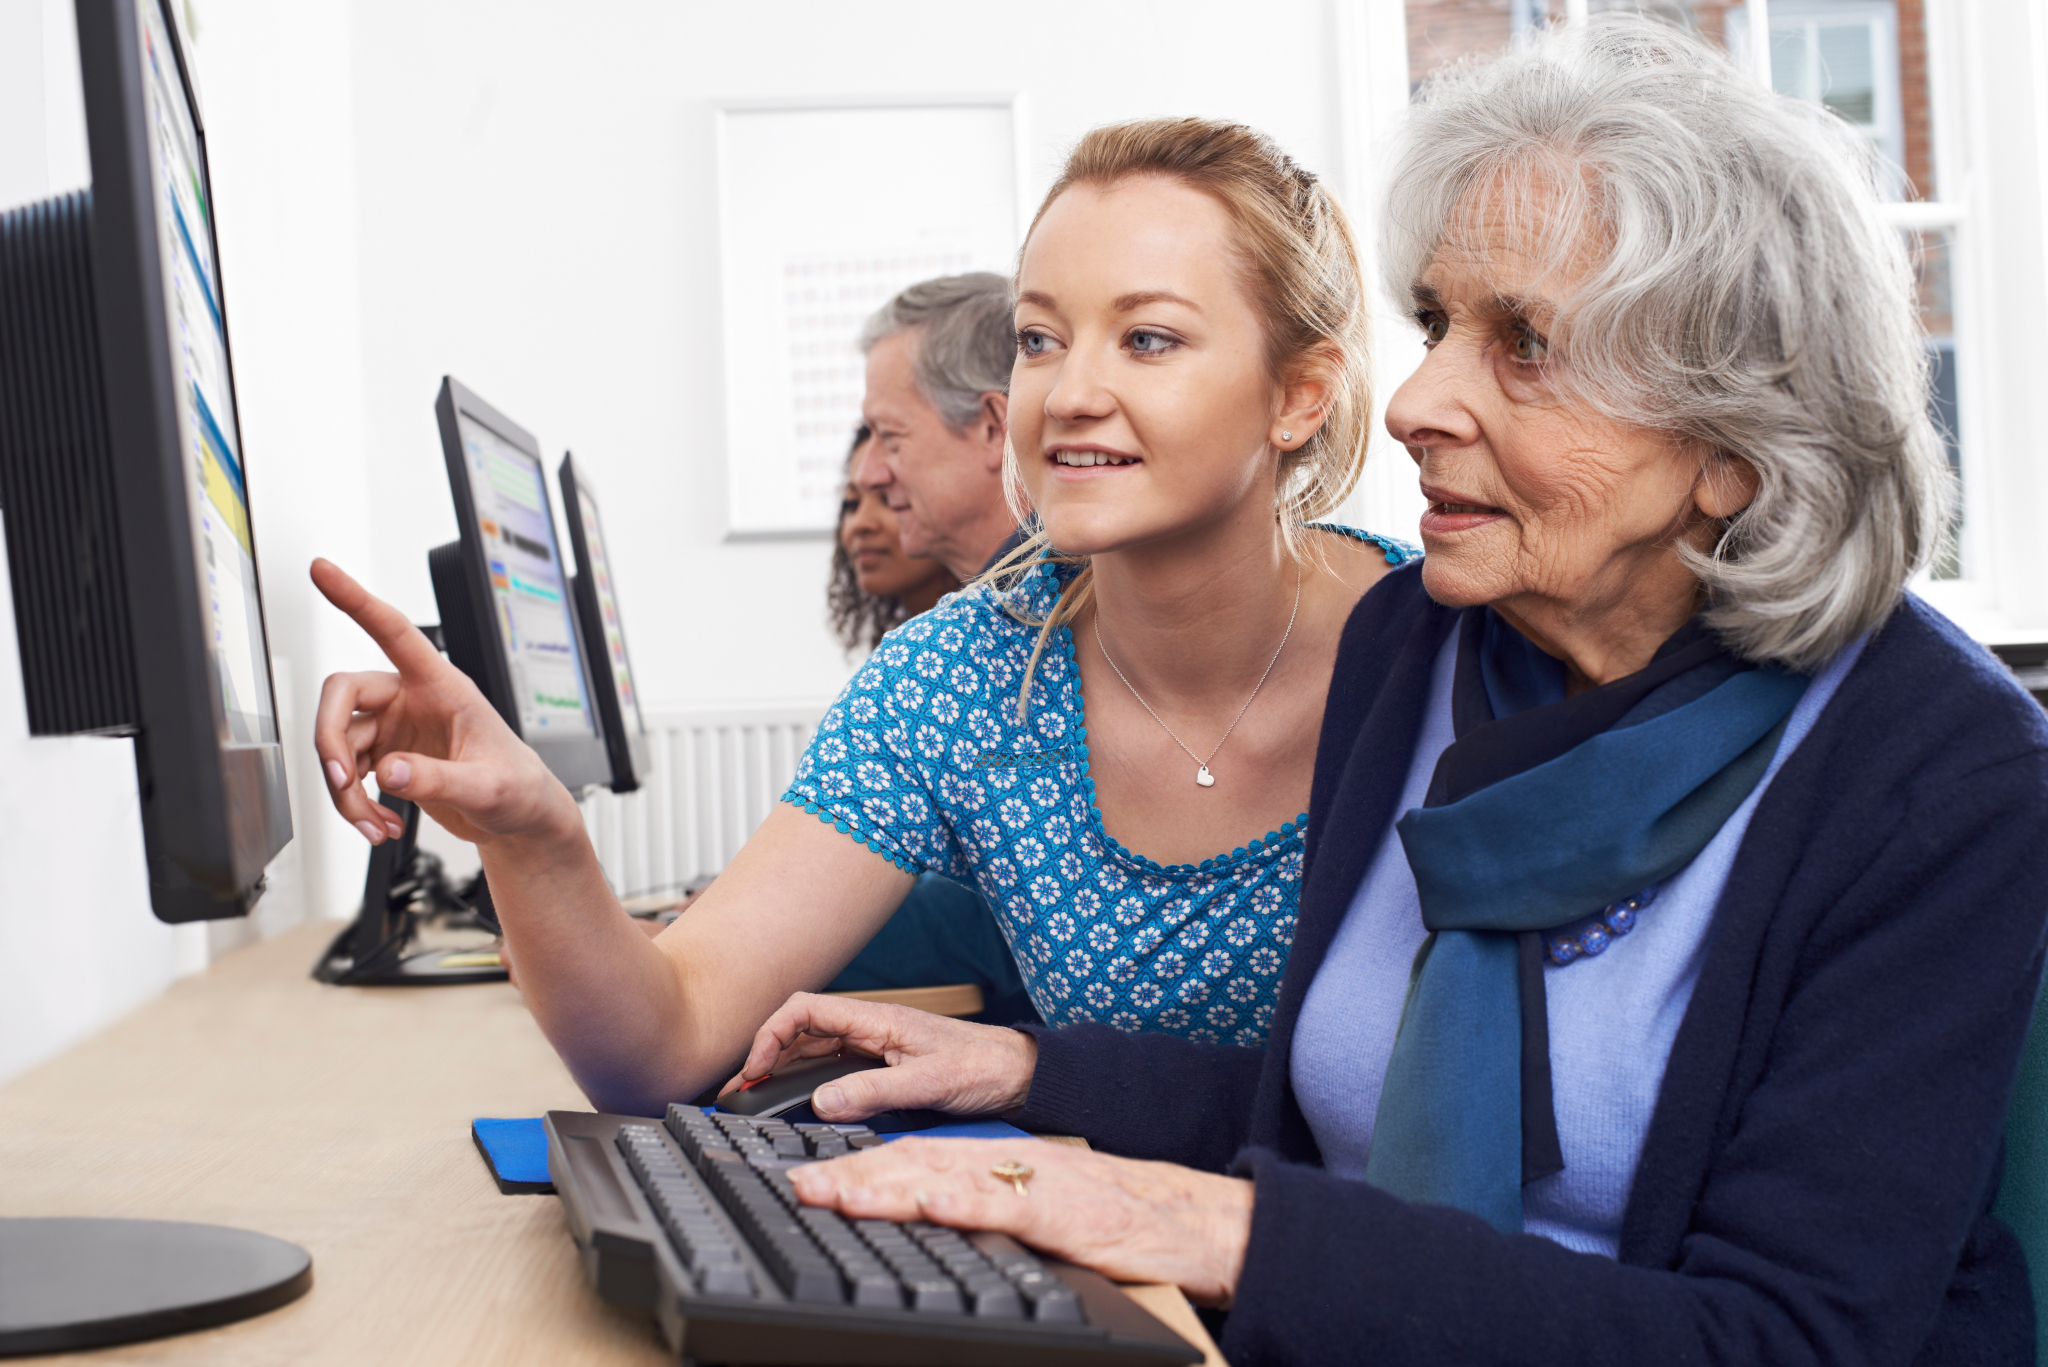 Foto zum Projekt Digitales Dorf Senioren; Junge Frau, die einer älteren Frau am PC hilft